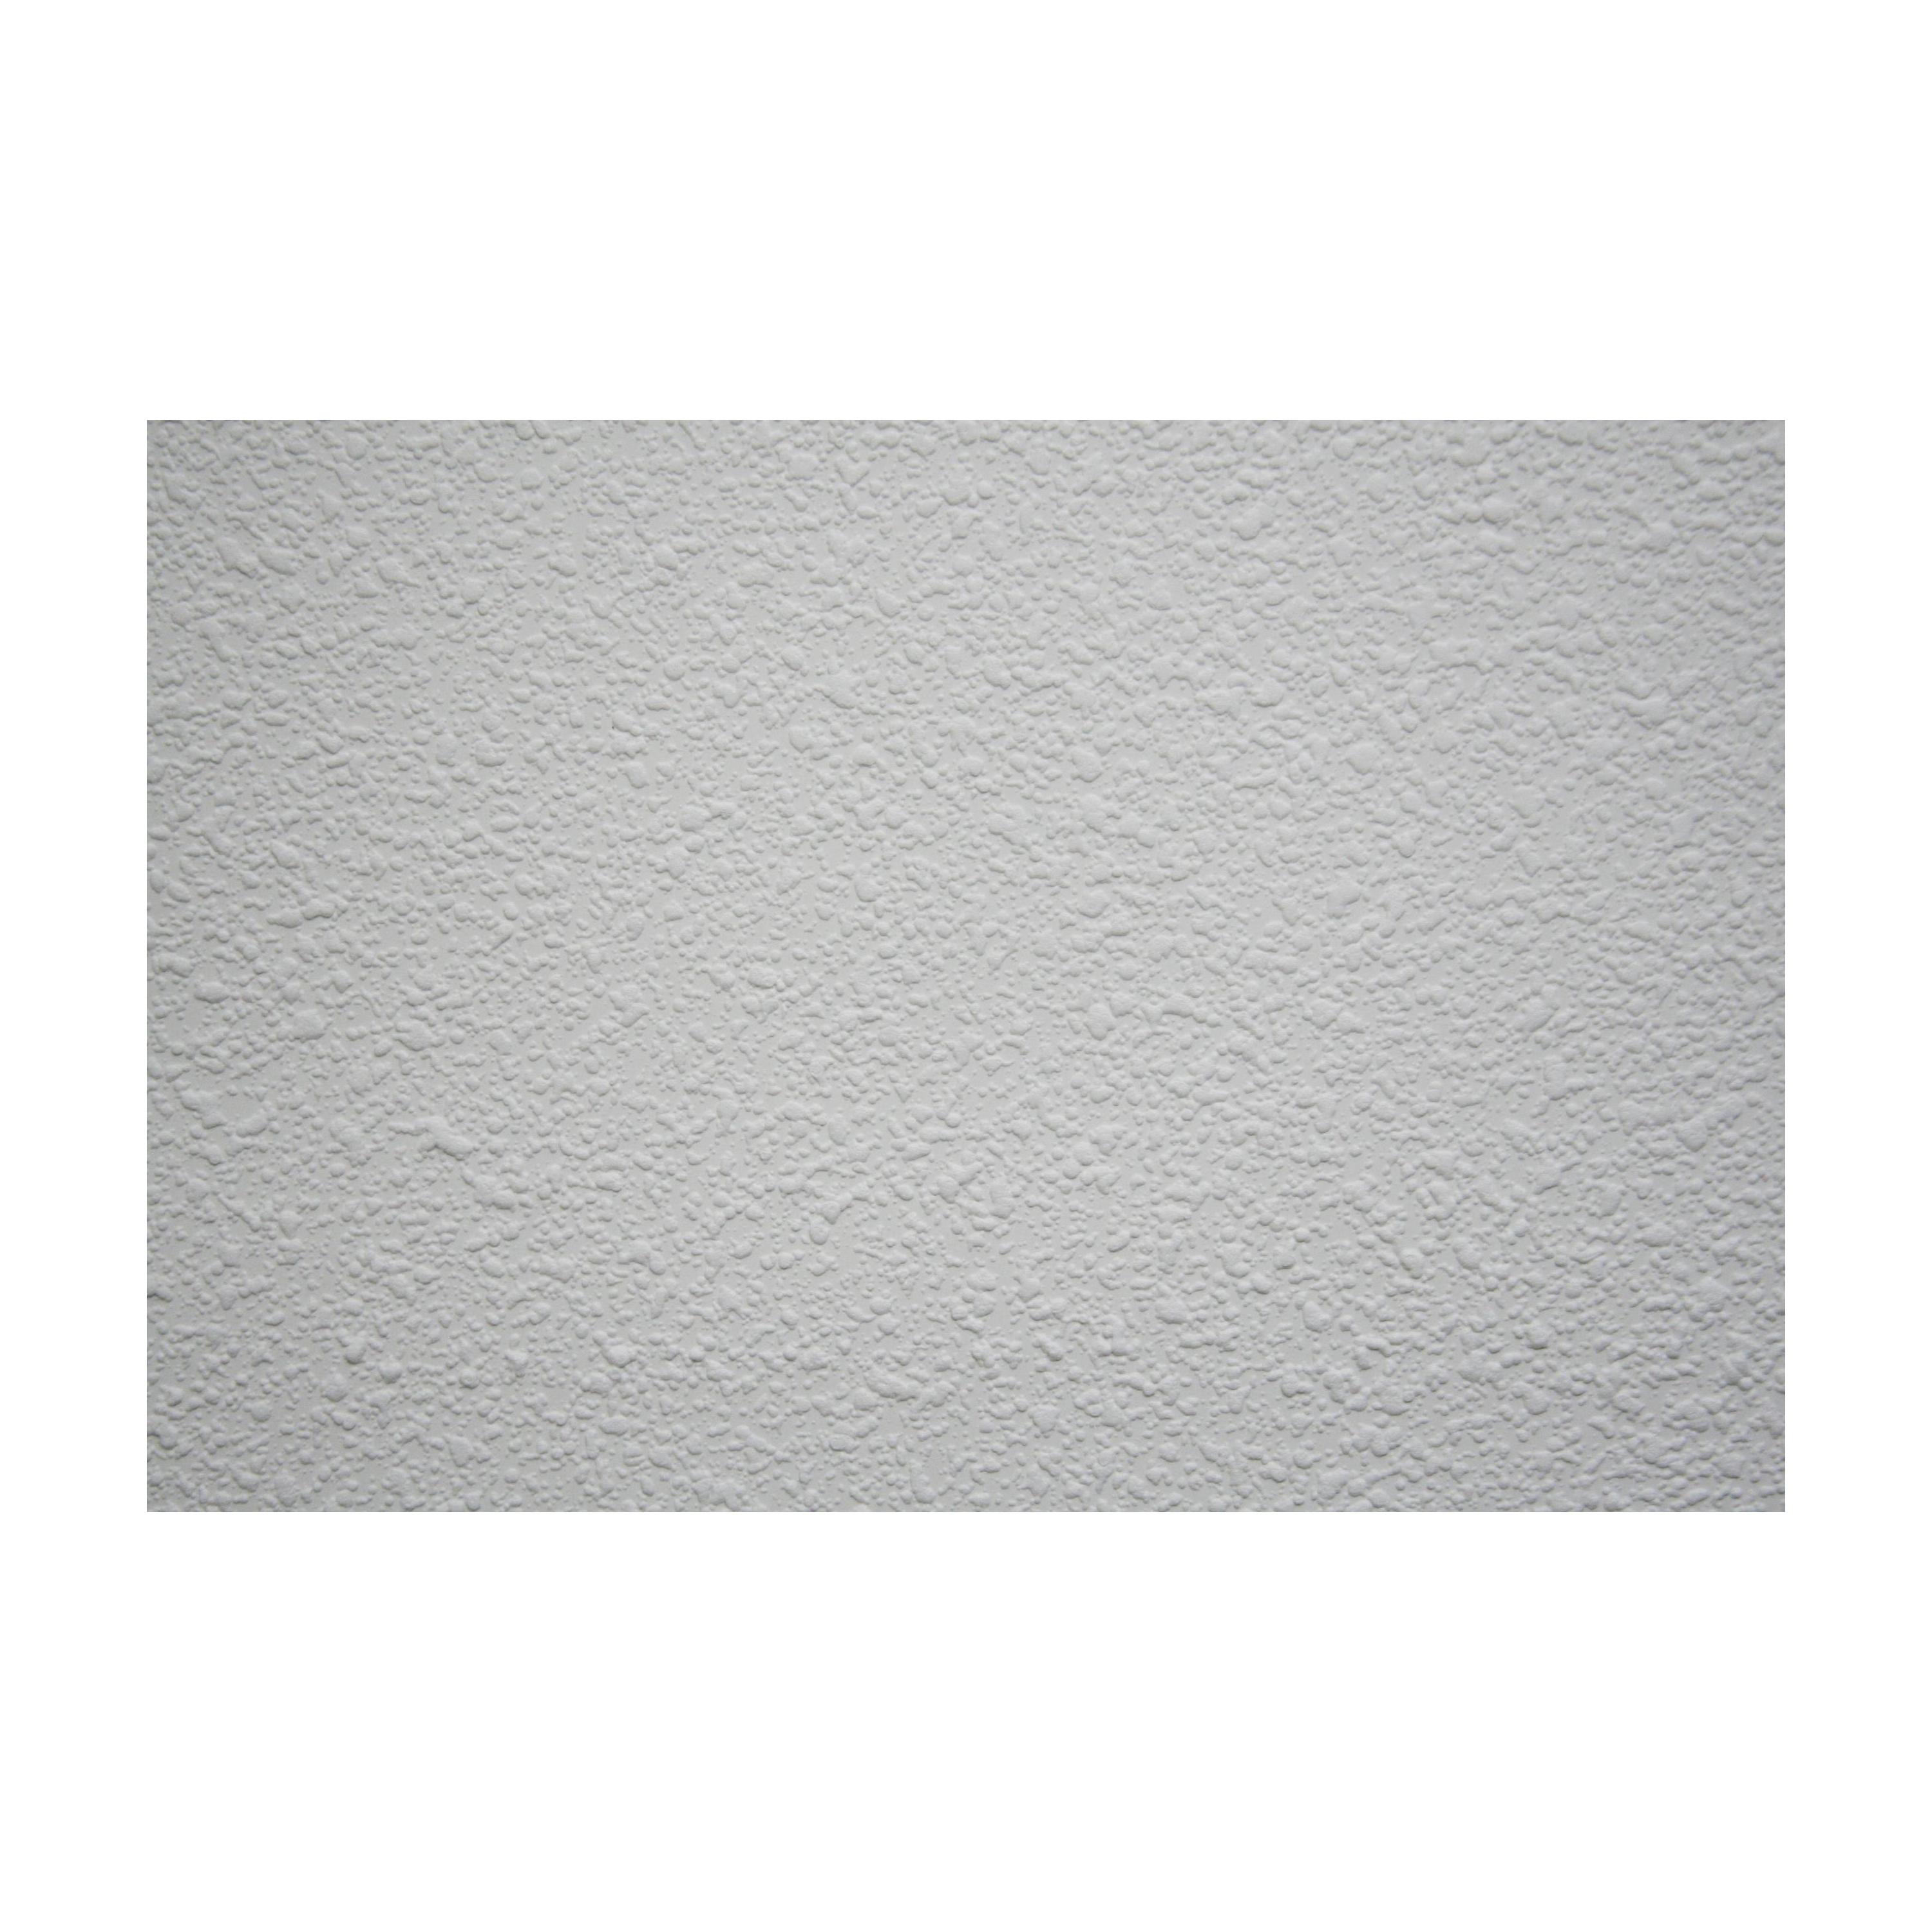 Concrete - HD Wallpaper 